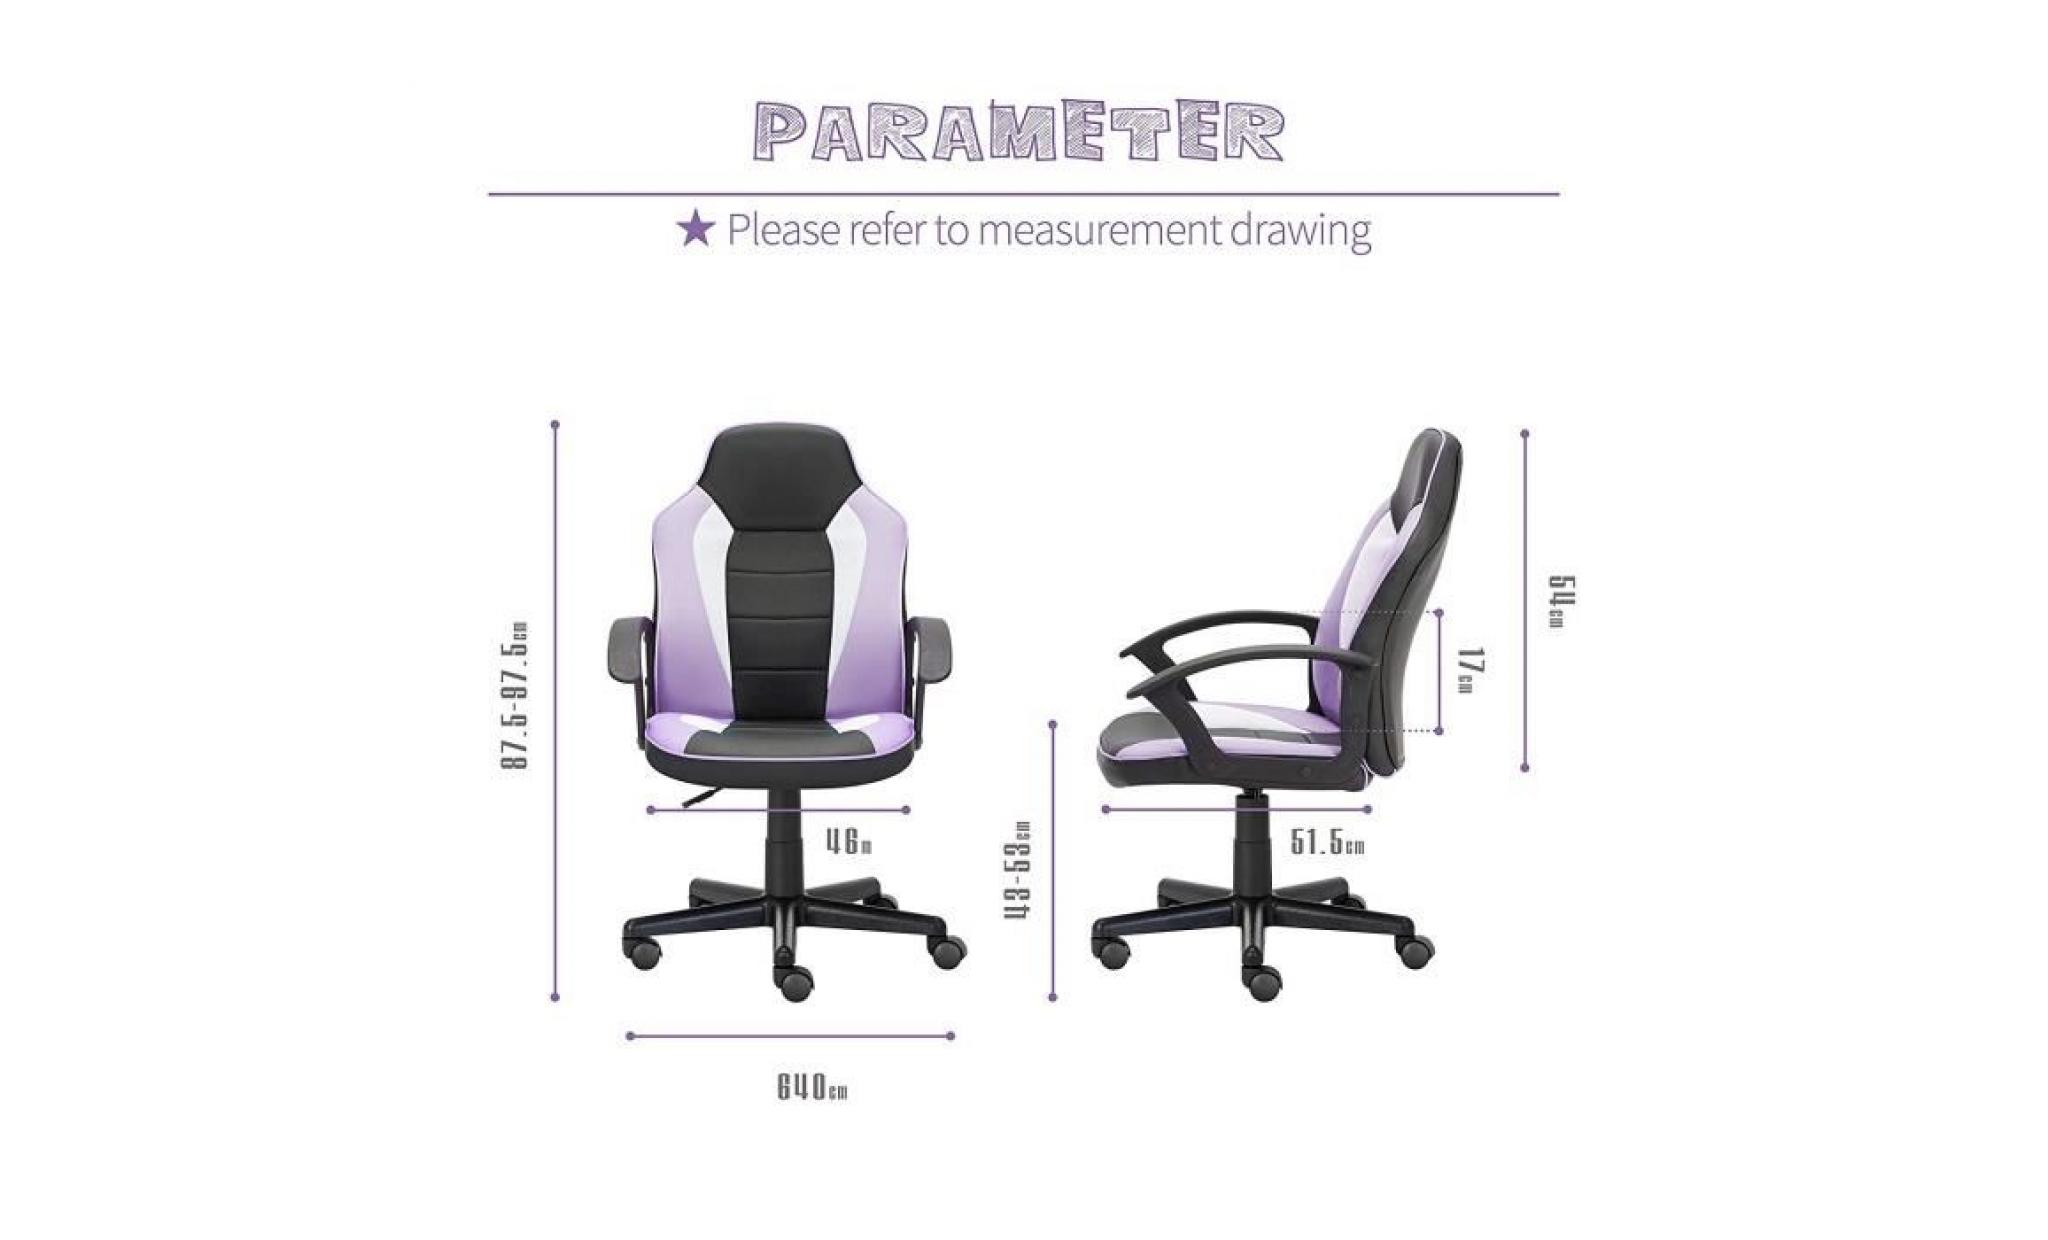 chaise de bureau pour enfant   siège etudiant   fauteuil de bureau réglable   violet   intimate wm heart pas cher